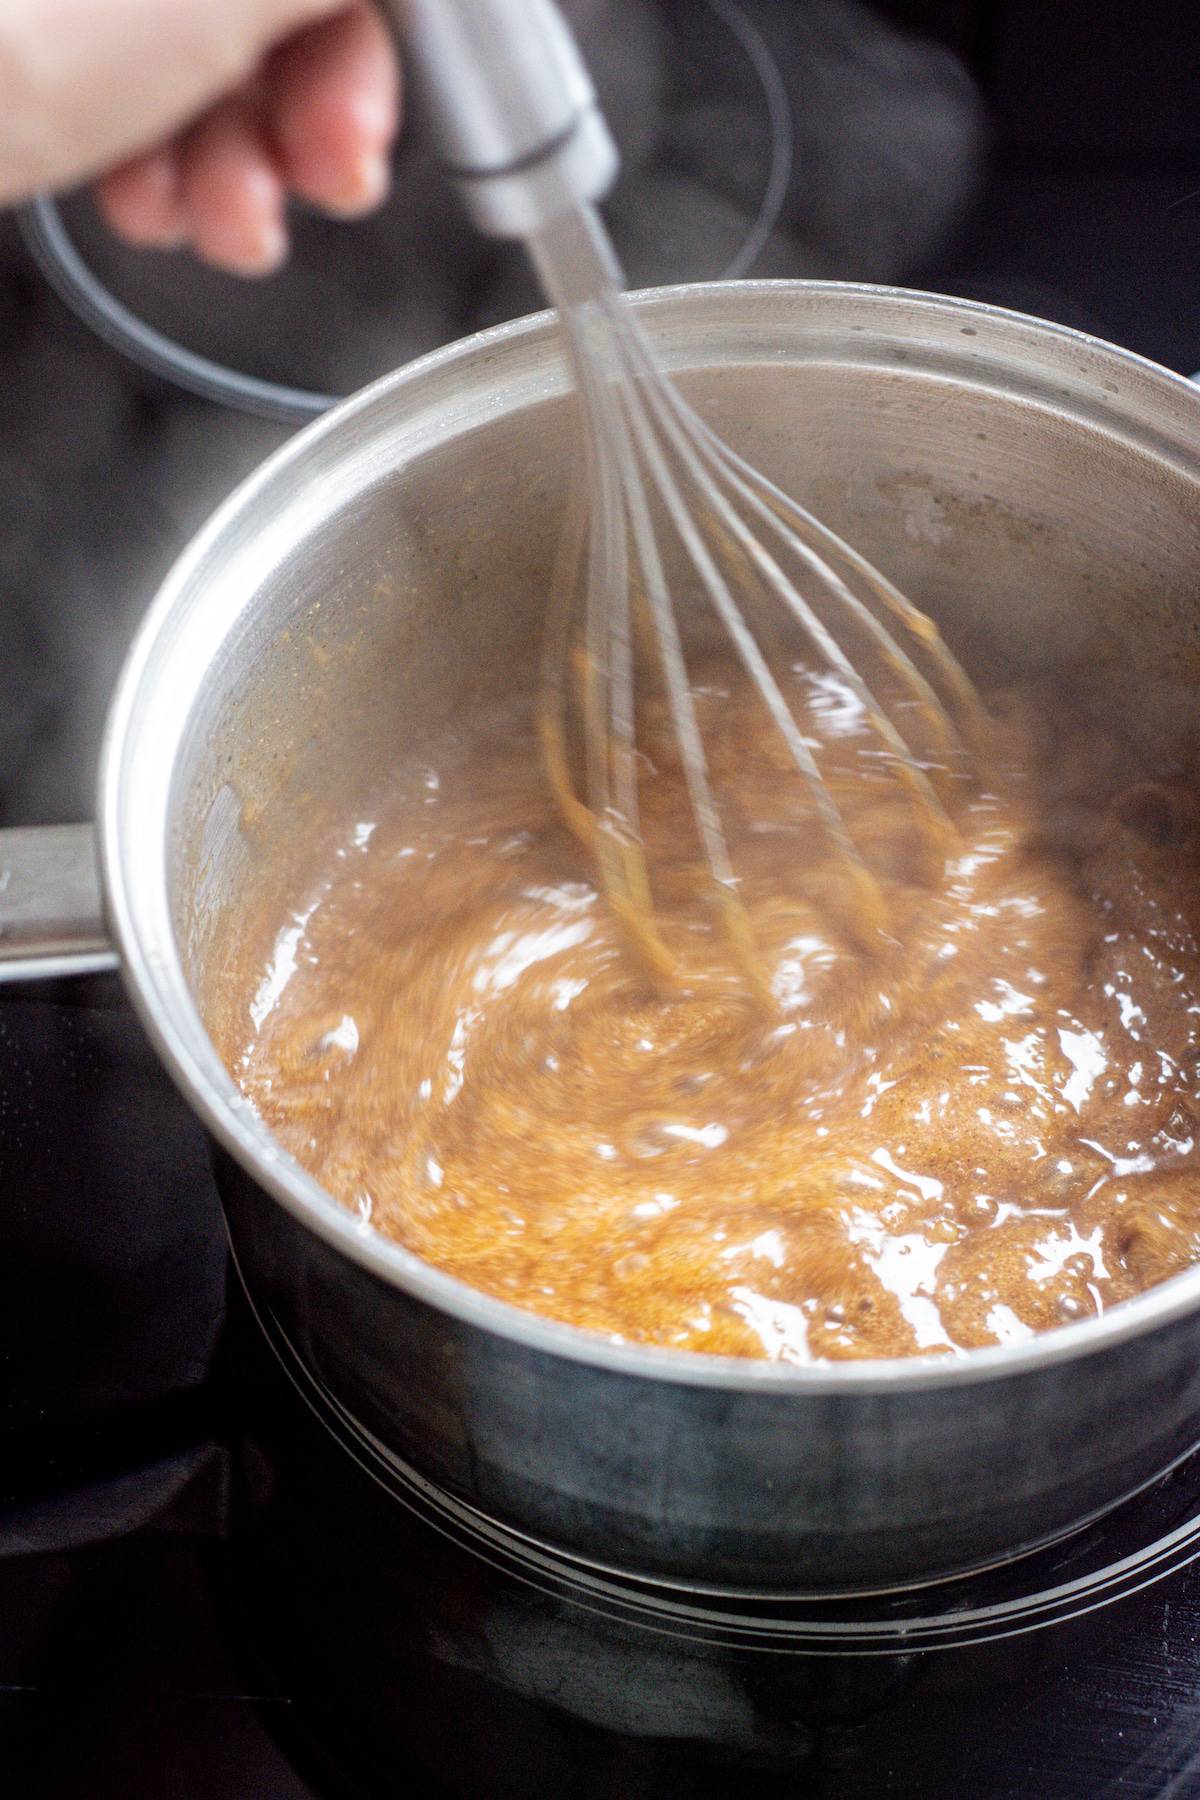 whisking brown caramel in a saucepan.